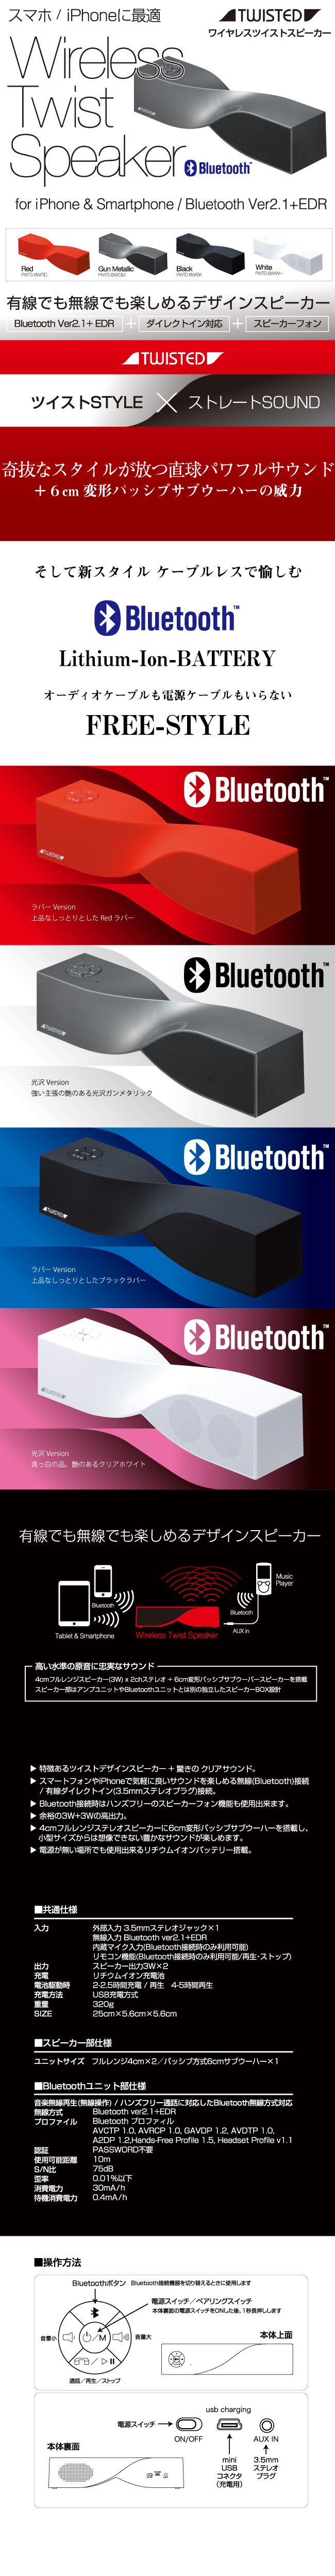 スタイリッシュ高音質Bluetoothワイヤレススピーカー